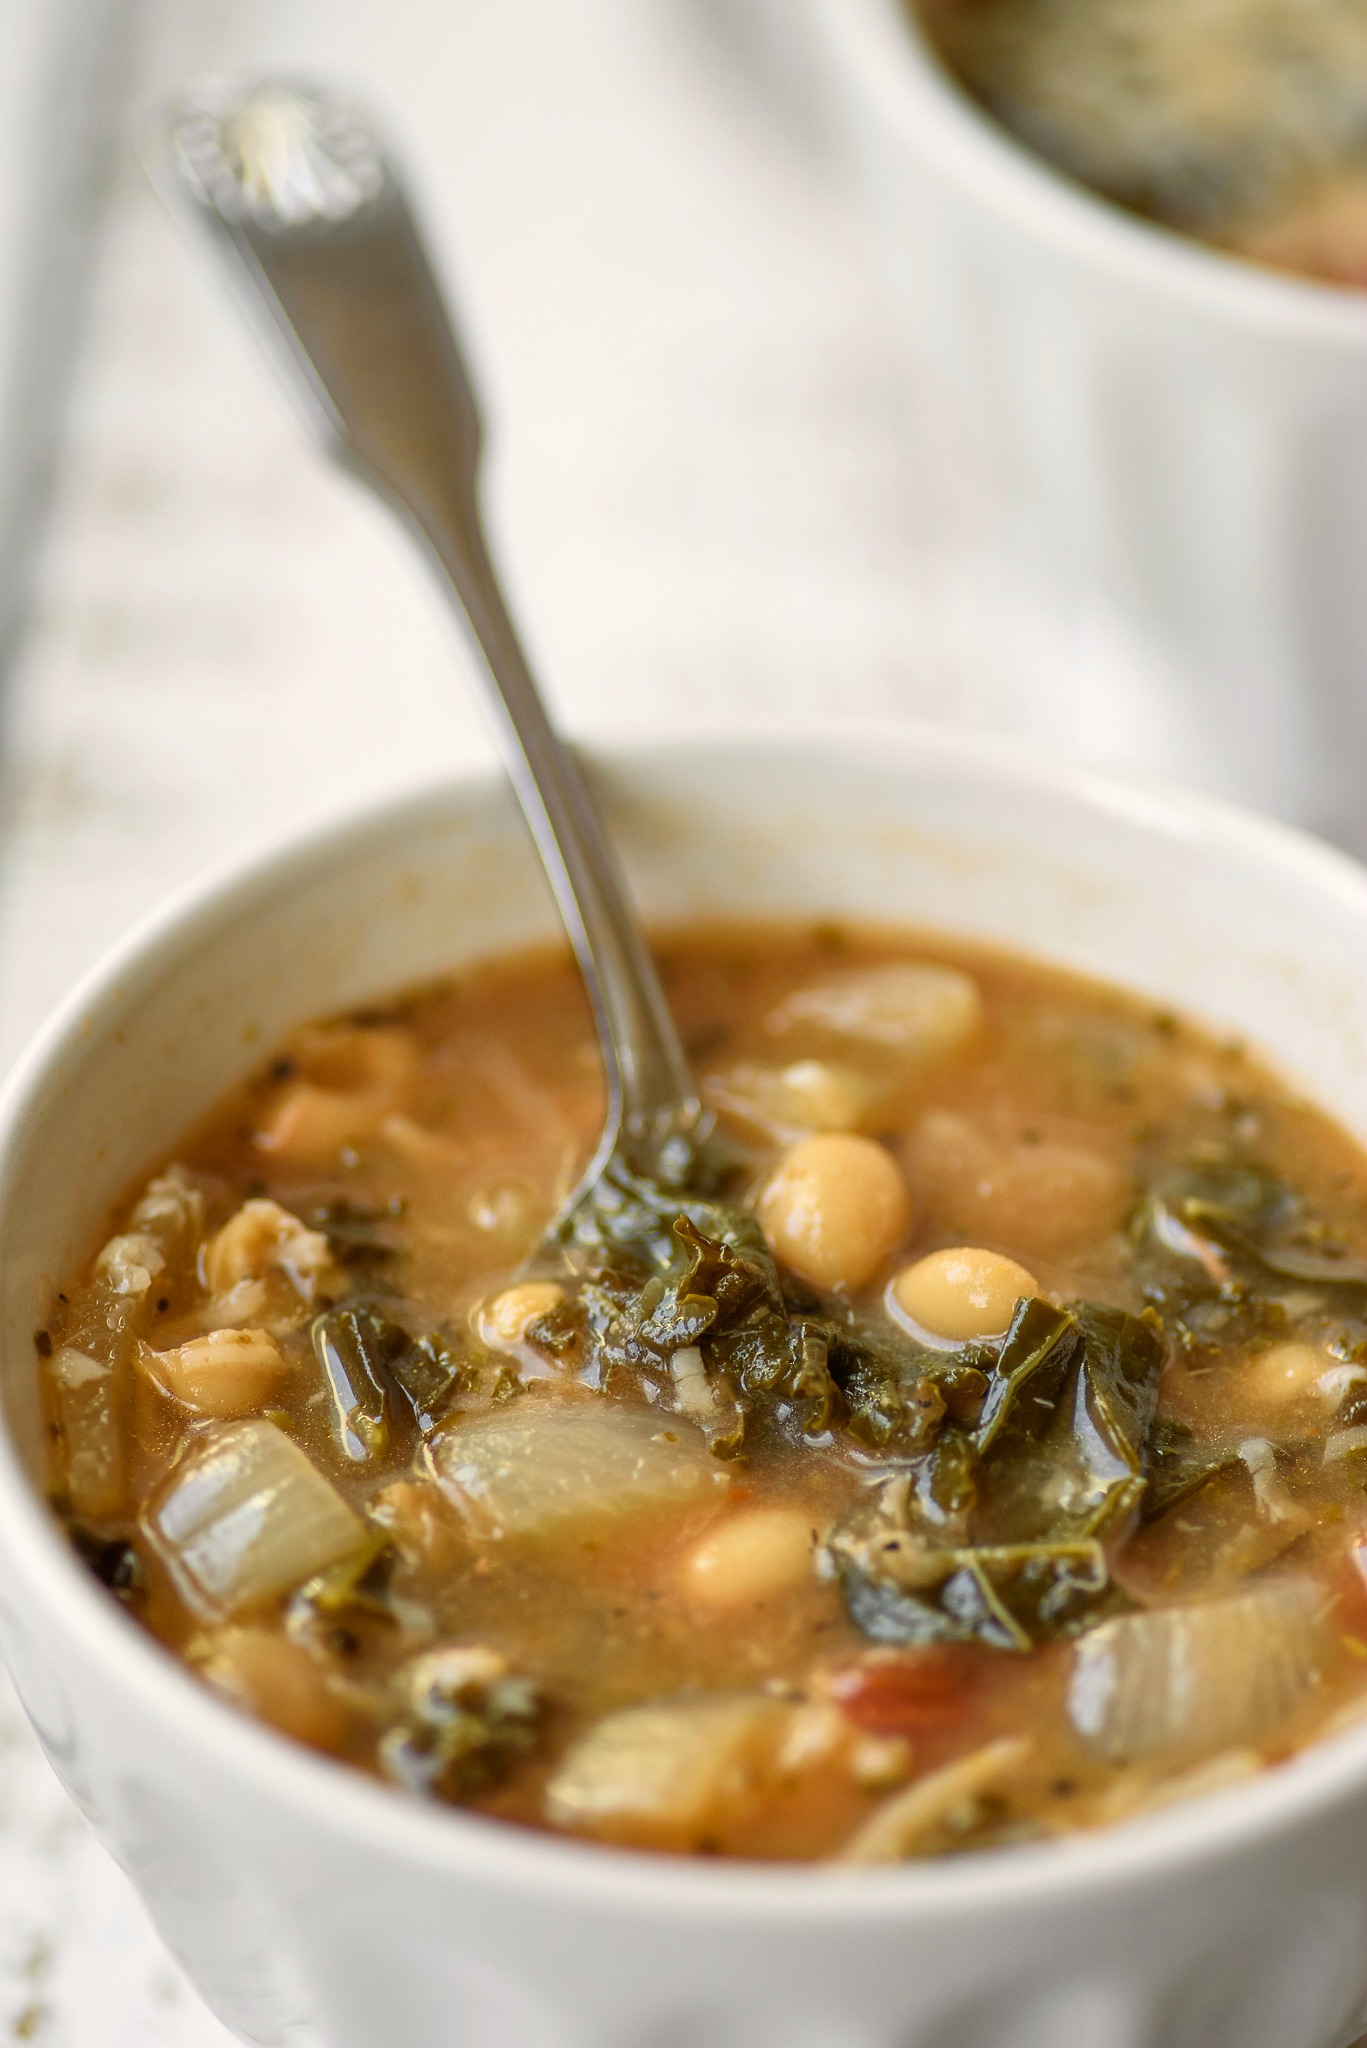 Kale Bean Soup